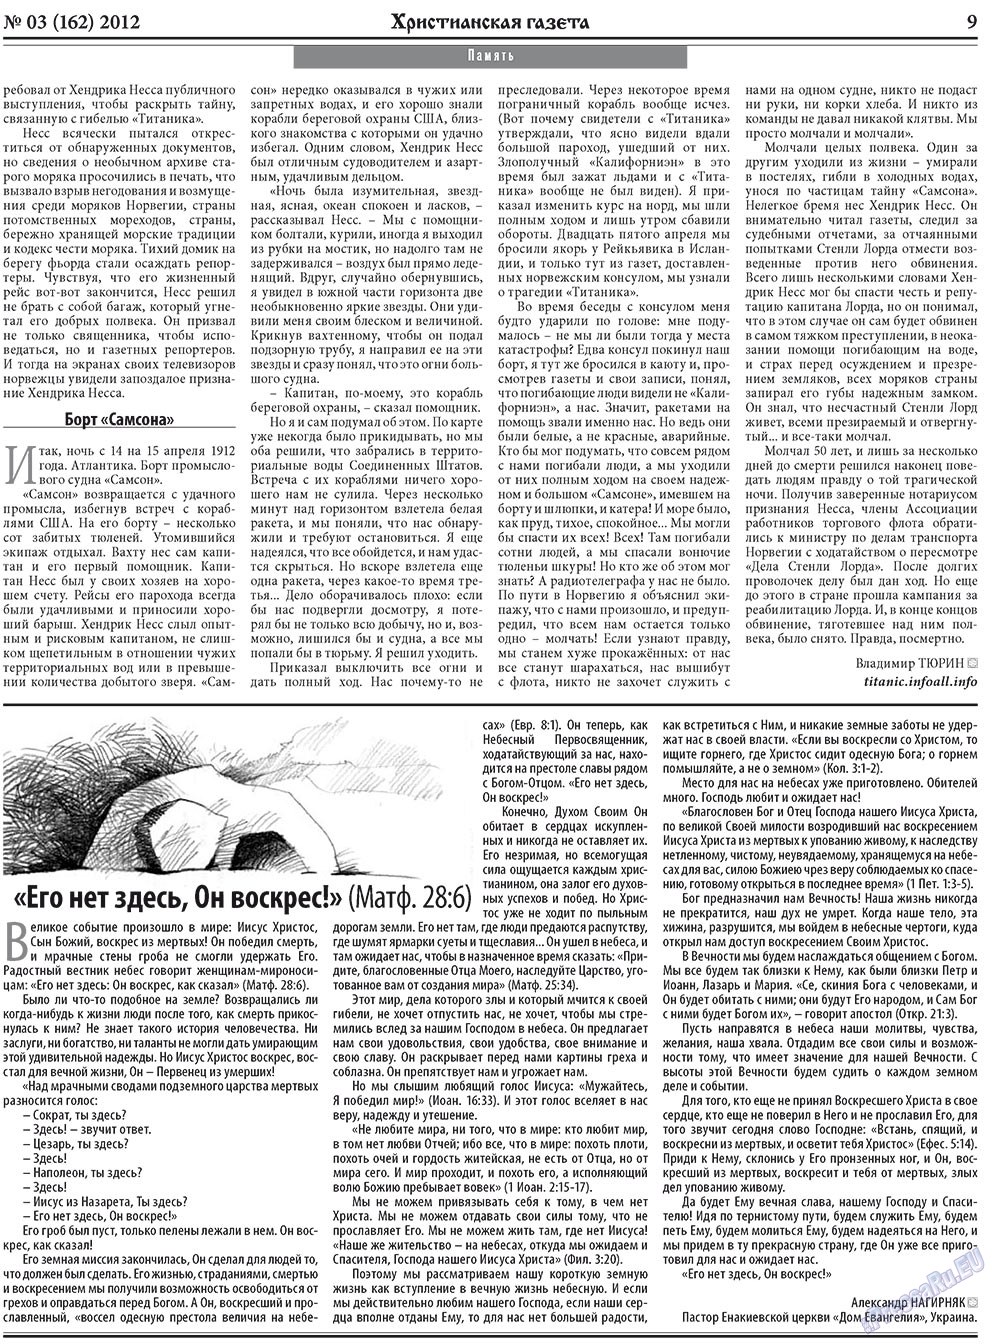 Христианская газета, газета. 2012 №3 стр.9